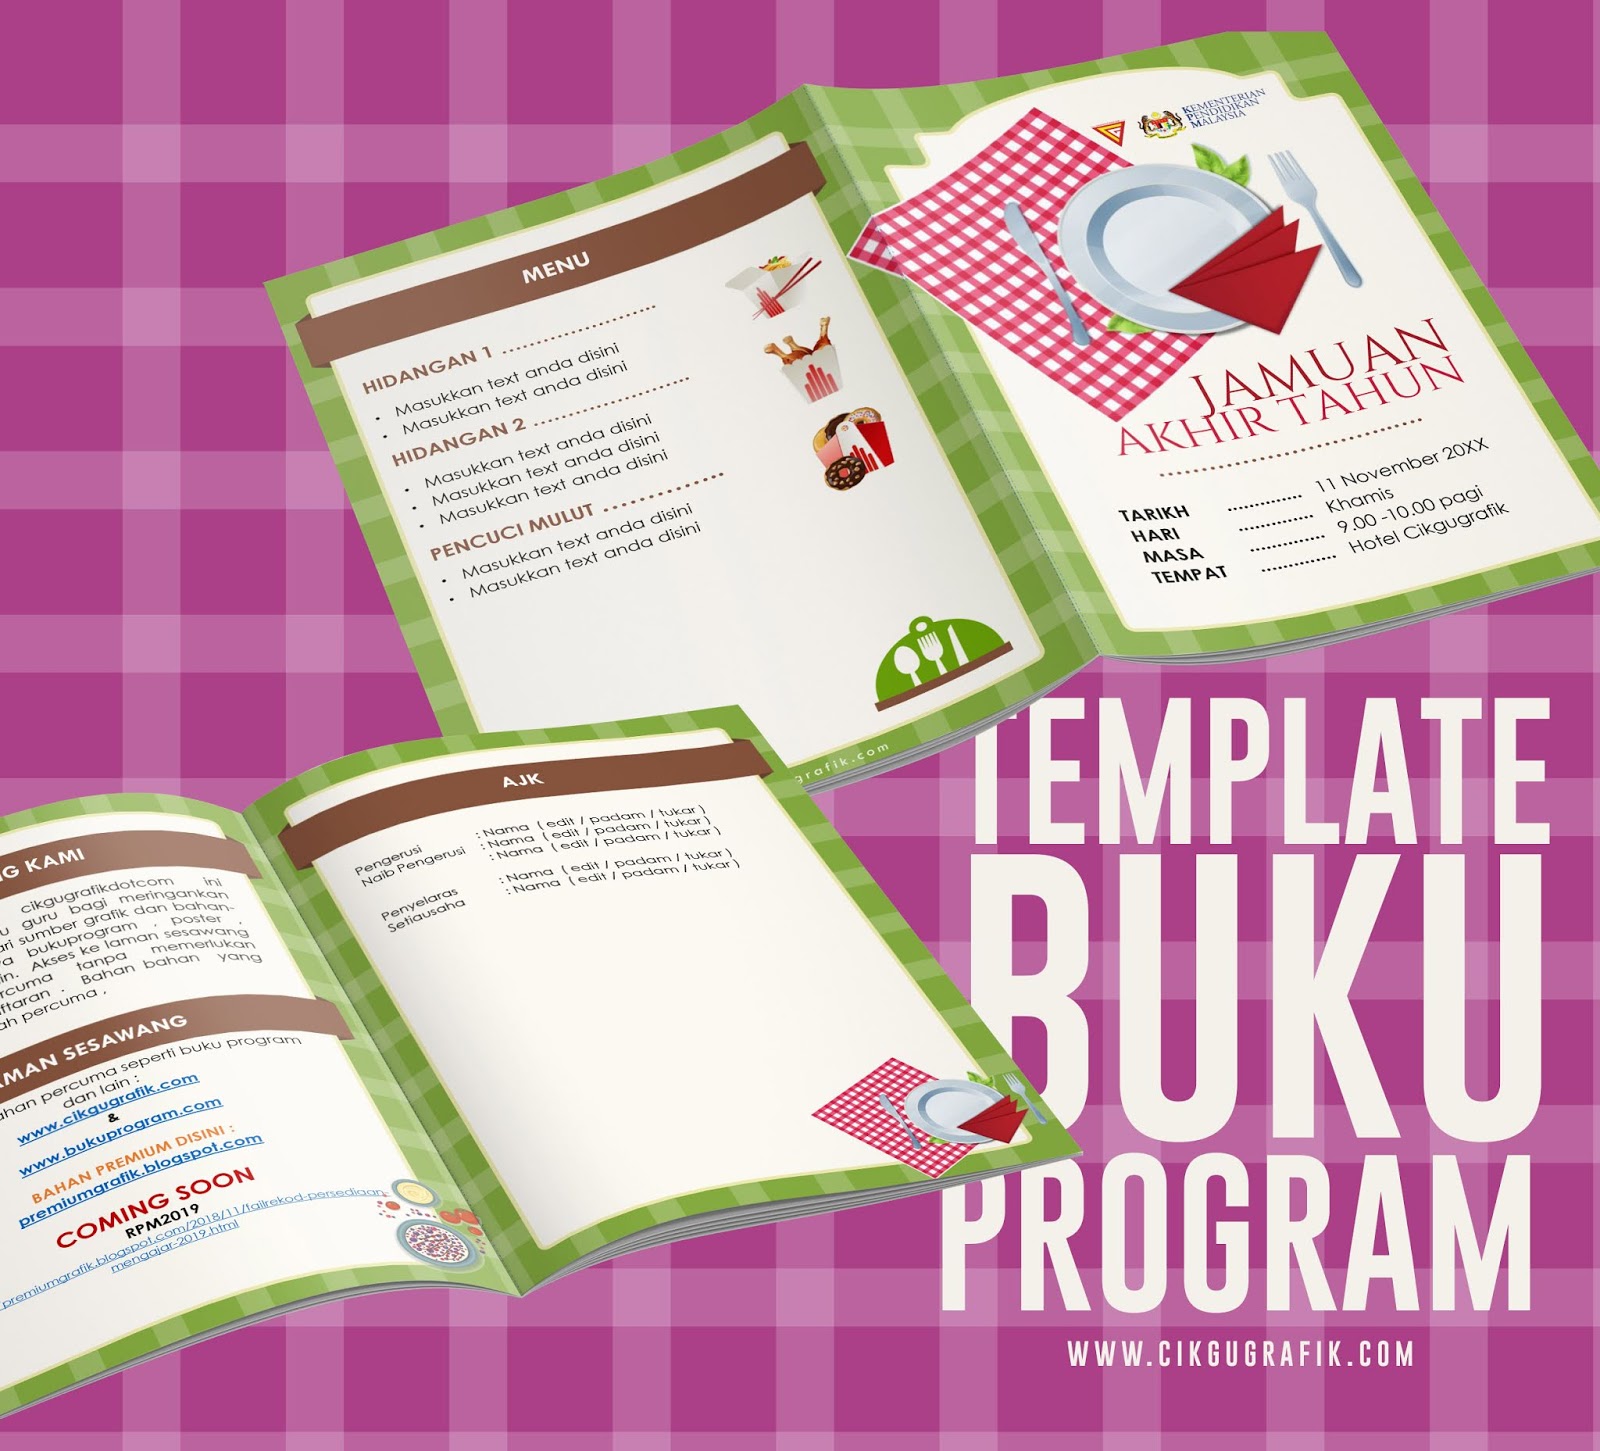 BUKU PROGRAM DOT COM: Template Buku Program Jamuan